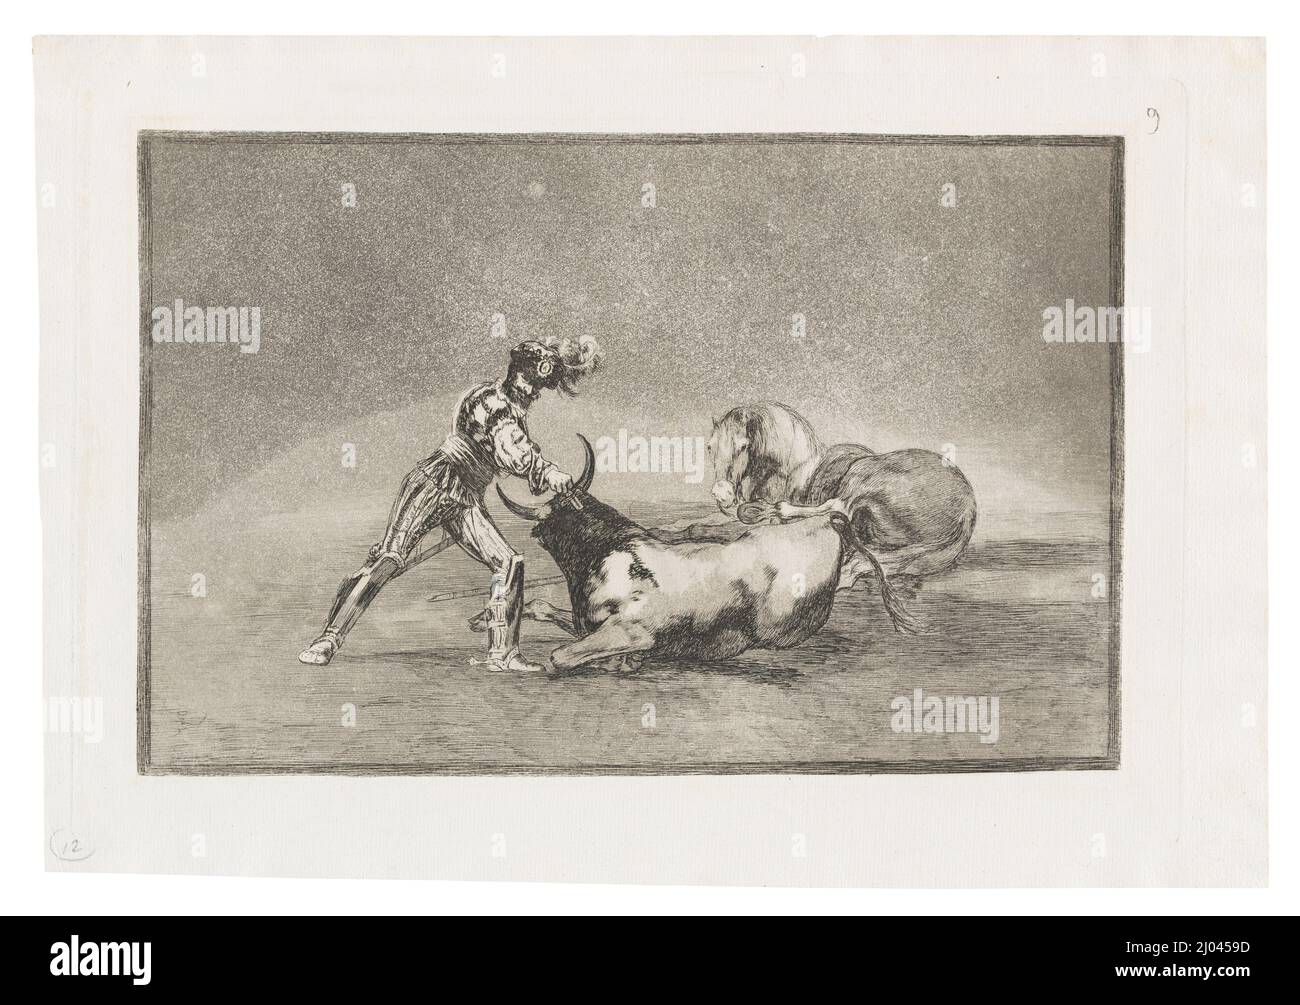 Un Caballero español mata un toro despues de haber perdido el caballero. Francisco Goya y Lucientes (Spain, Fuendetodos, 1746-1828). Spain, 1816. Prints. Etching, burnished aquatint, and burin Stock Photo